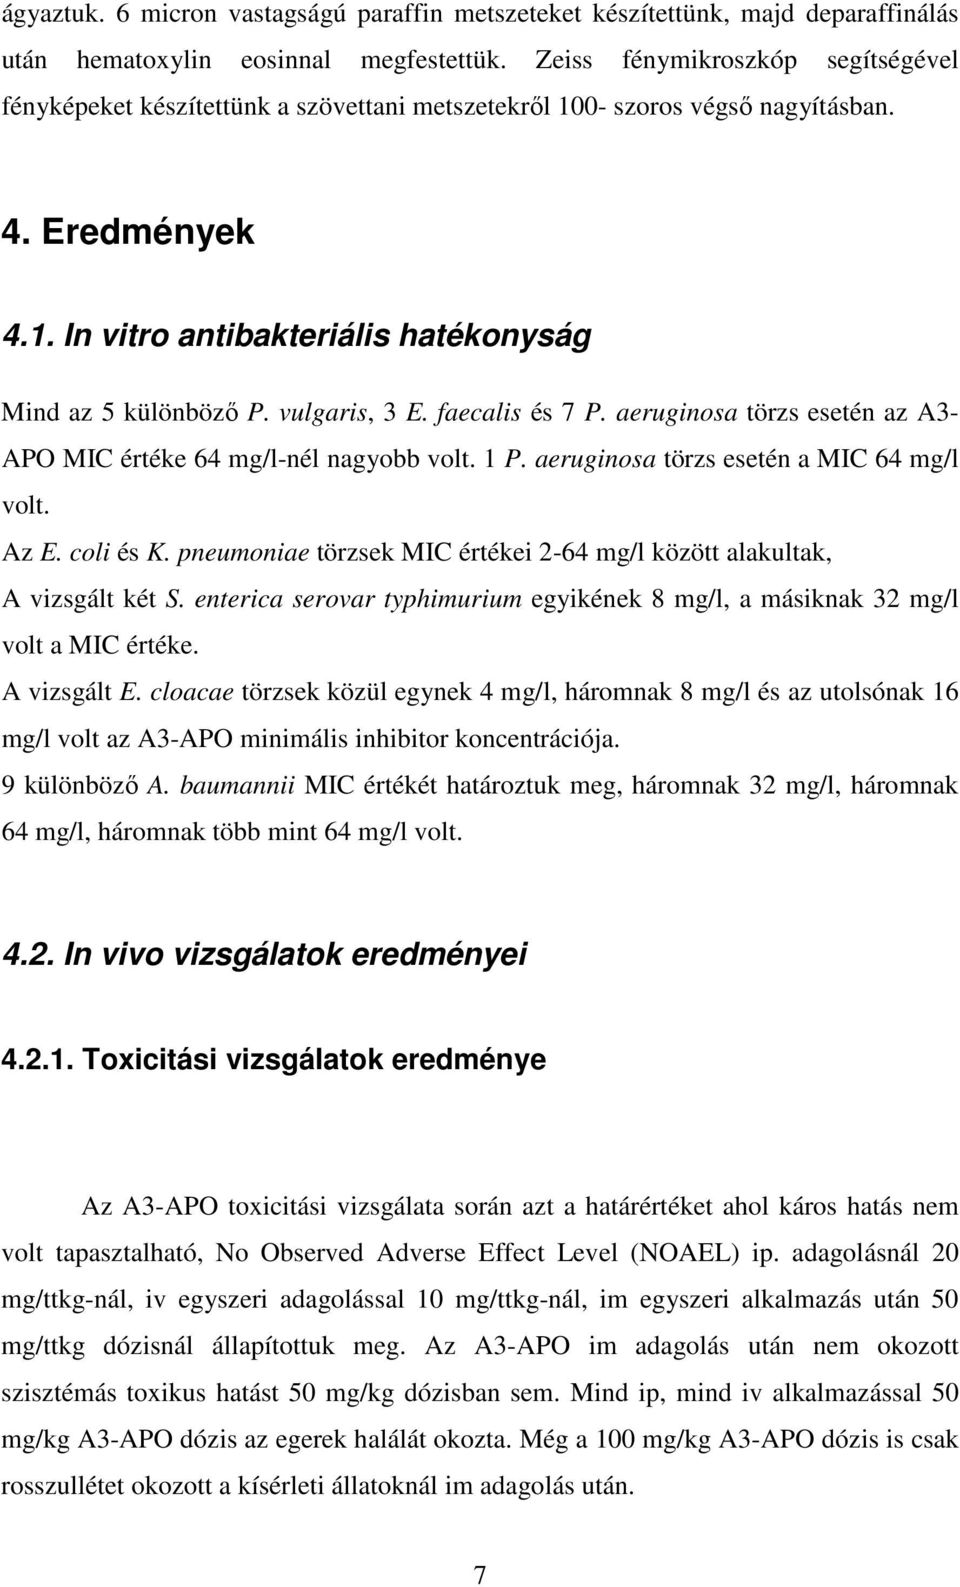 vulgaris, 3 E. faecalis és 7 P. aeruginosa törzs esetén az A3- APO MIC értéke 64 mg/l-nél nagyobb volt. 1 P. aeruginosa törzs esetén a MIC 64 mg/l volt. Az E. coli és K.